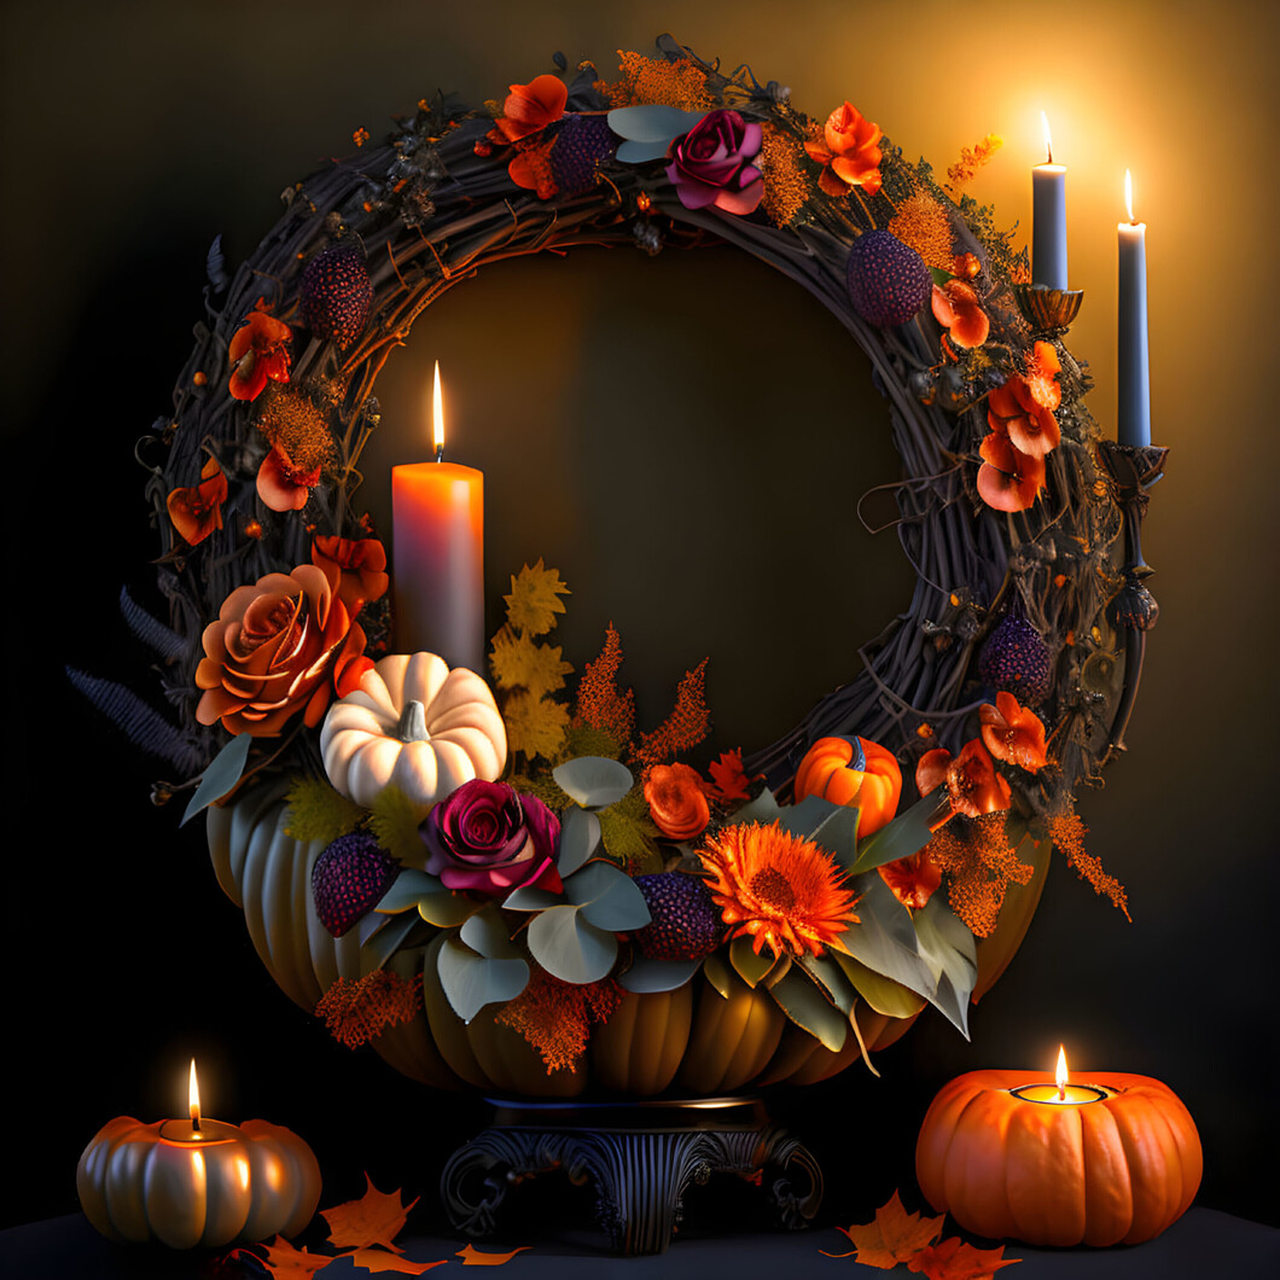 DIY or Store-Bought - Halloween Wreaths and Door Decor